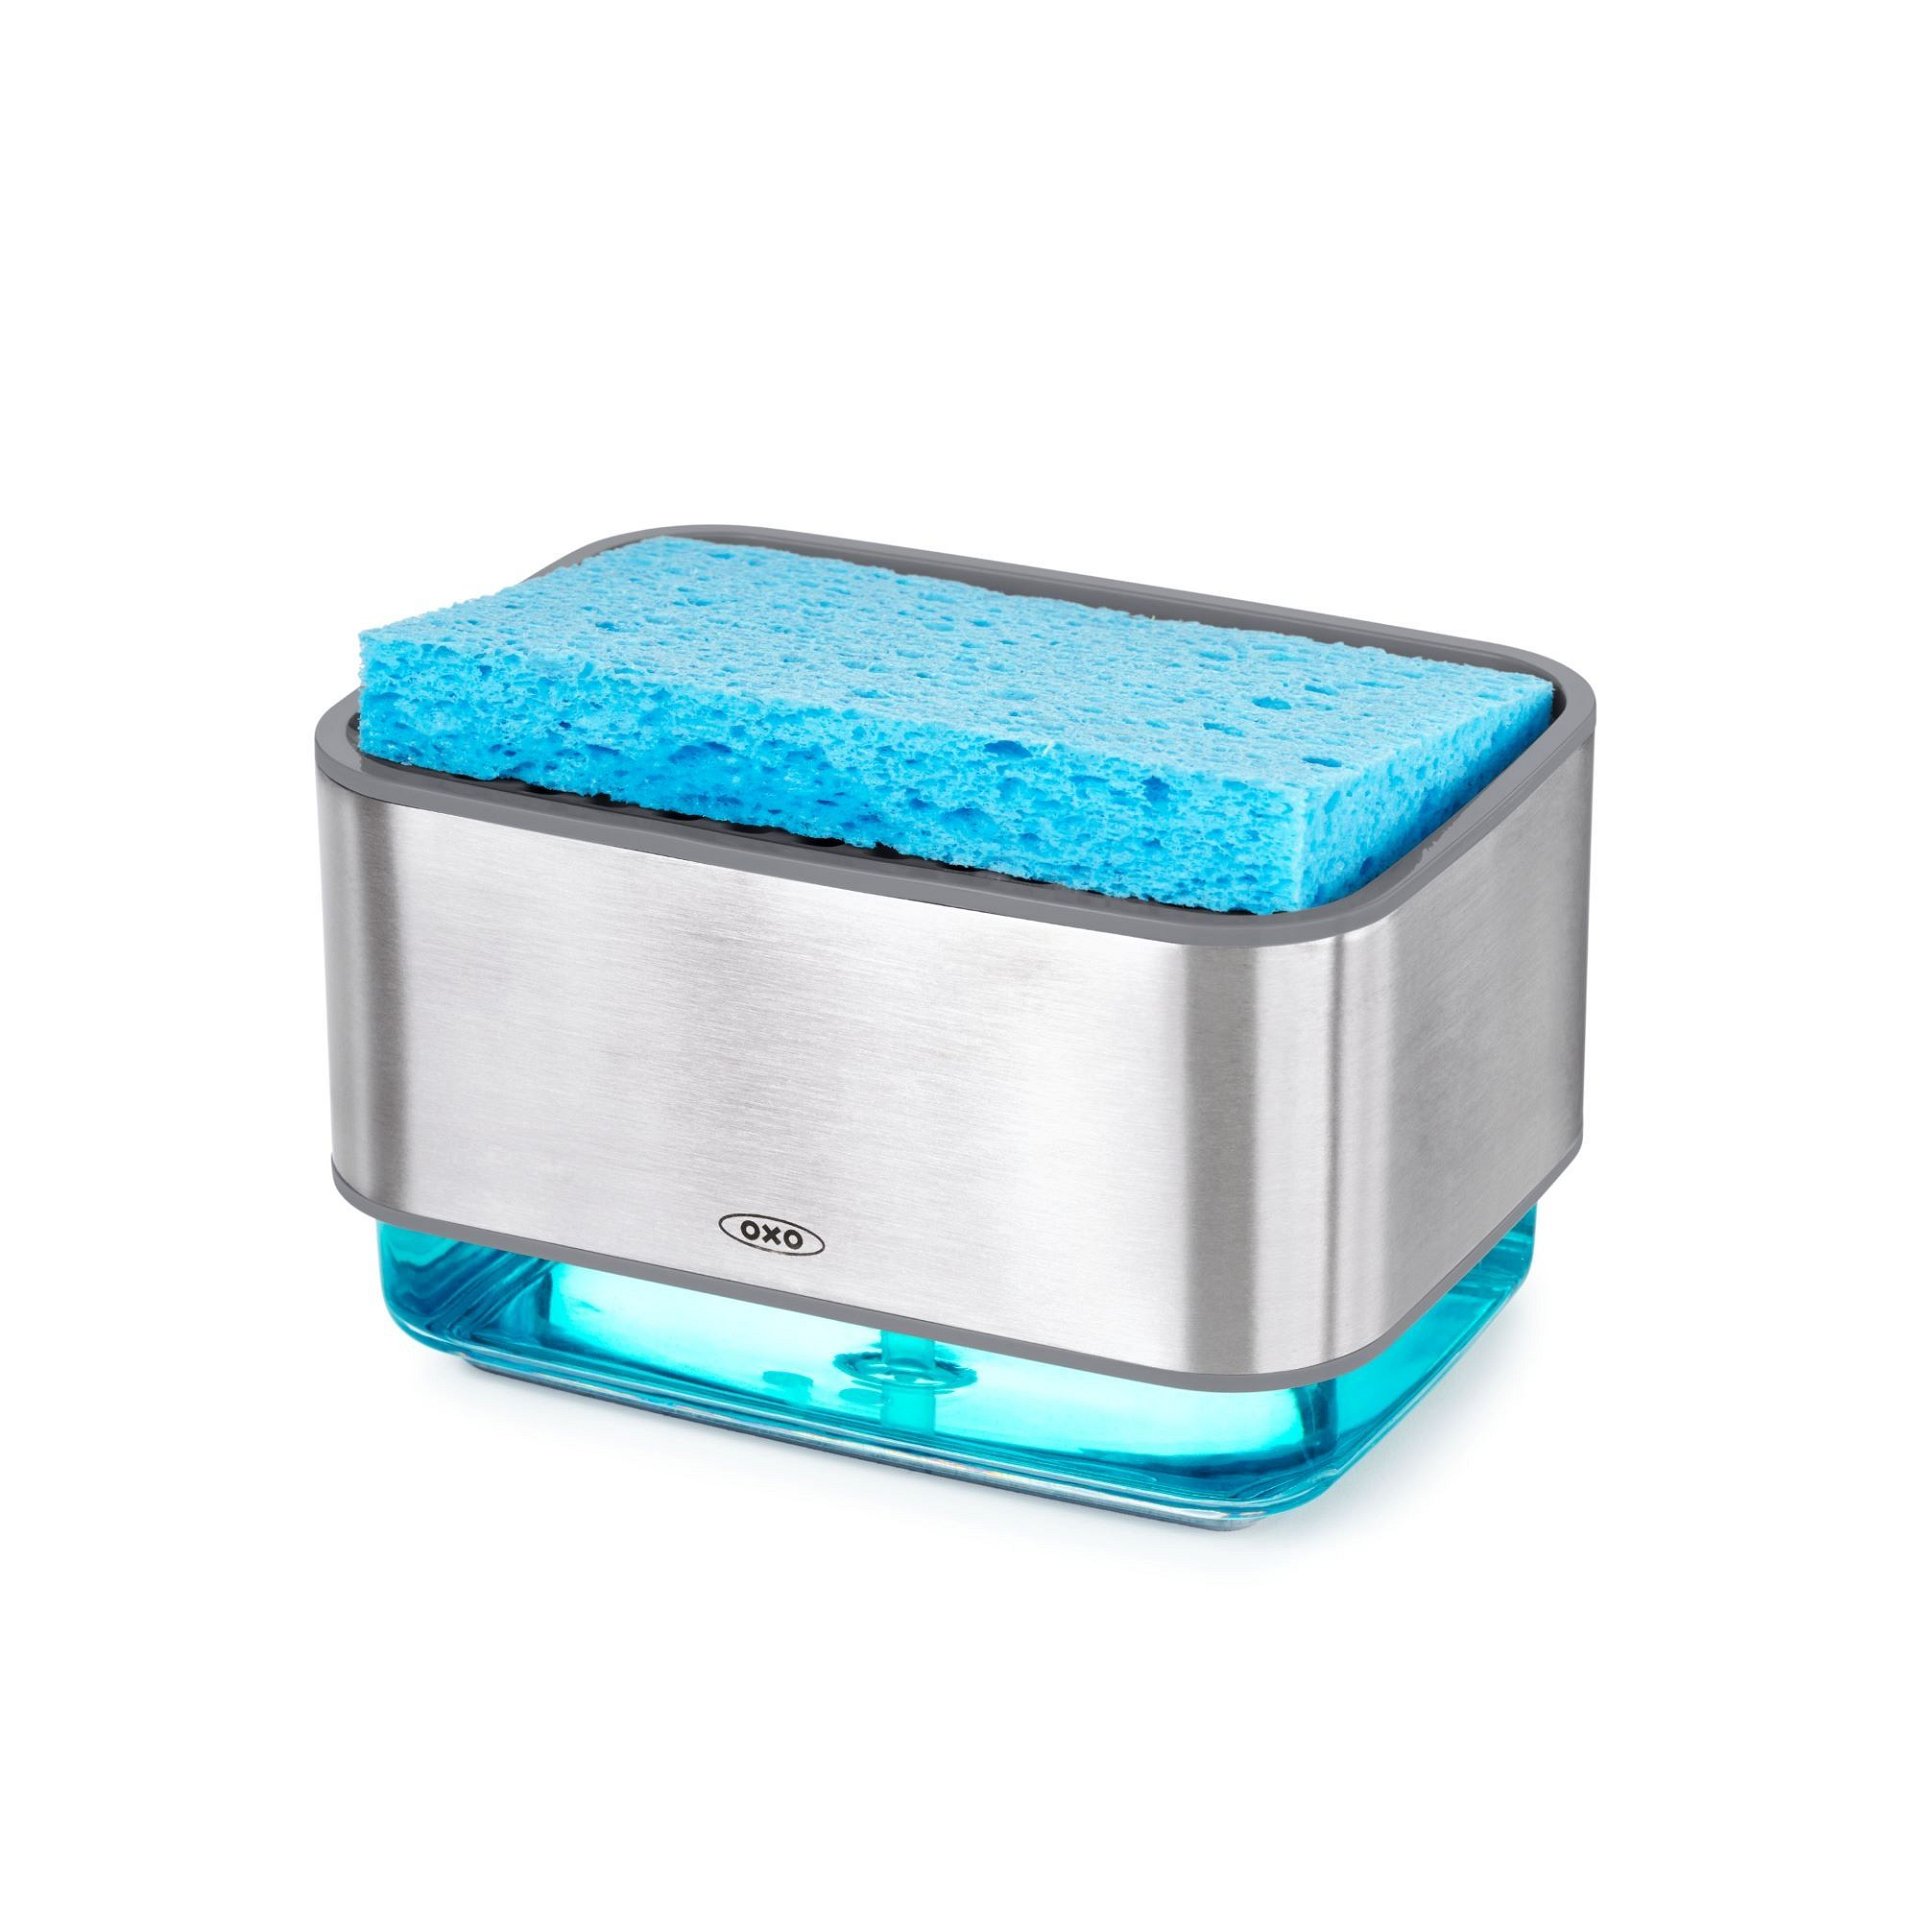  OXO Good Grips Soap Dispensing Dish Sponge : Health & Household